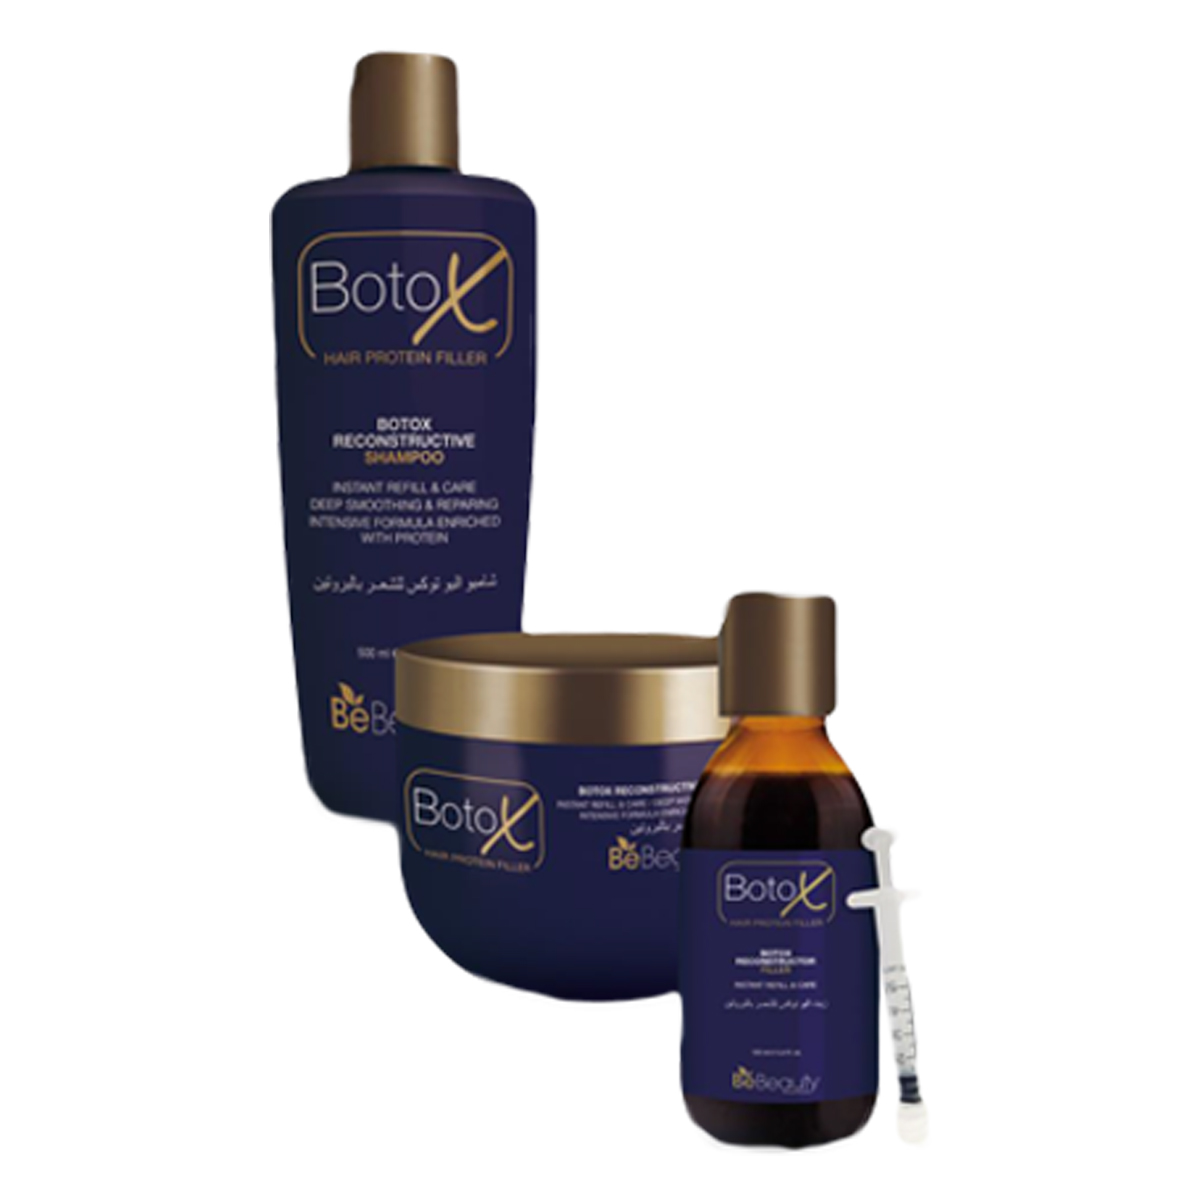 botox-bebeauty-productos